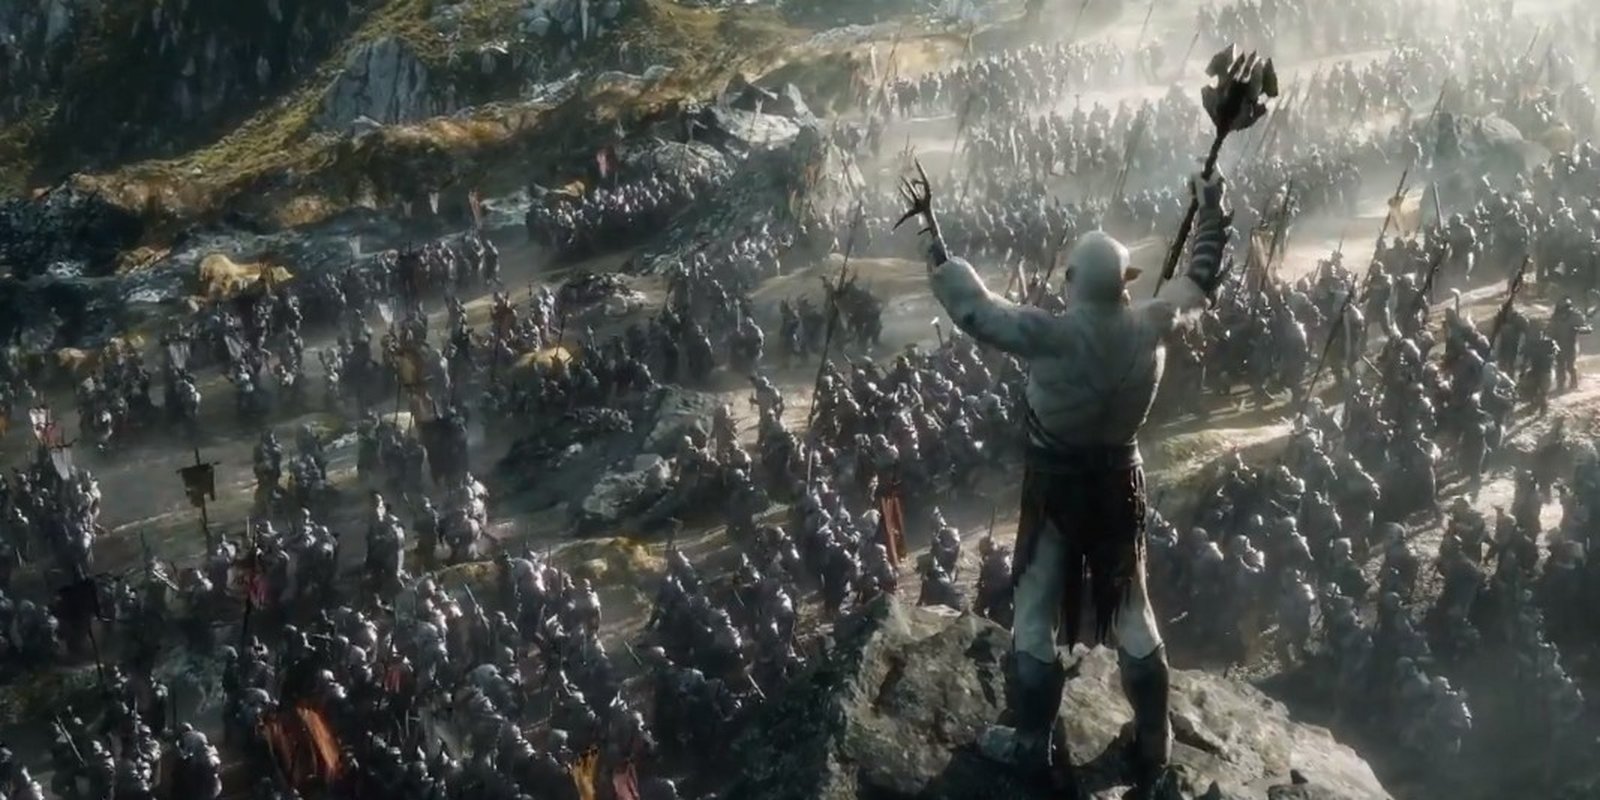 Der Hobbit 3 - Die Schlacht der fünf Heere